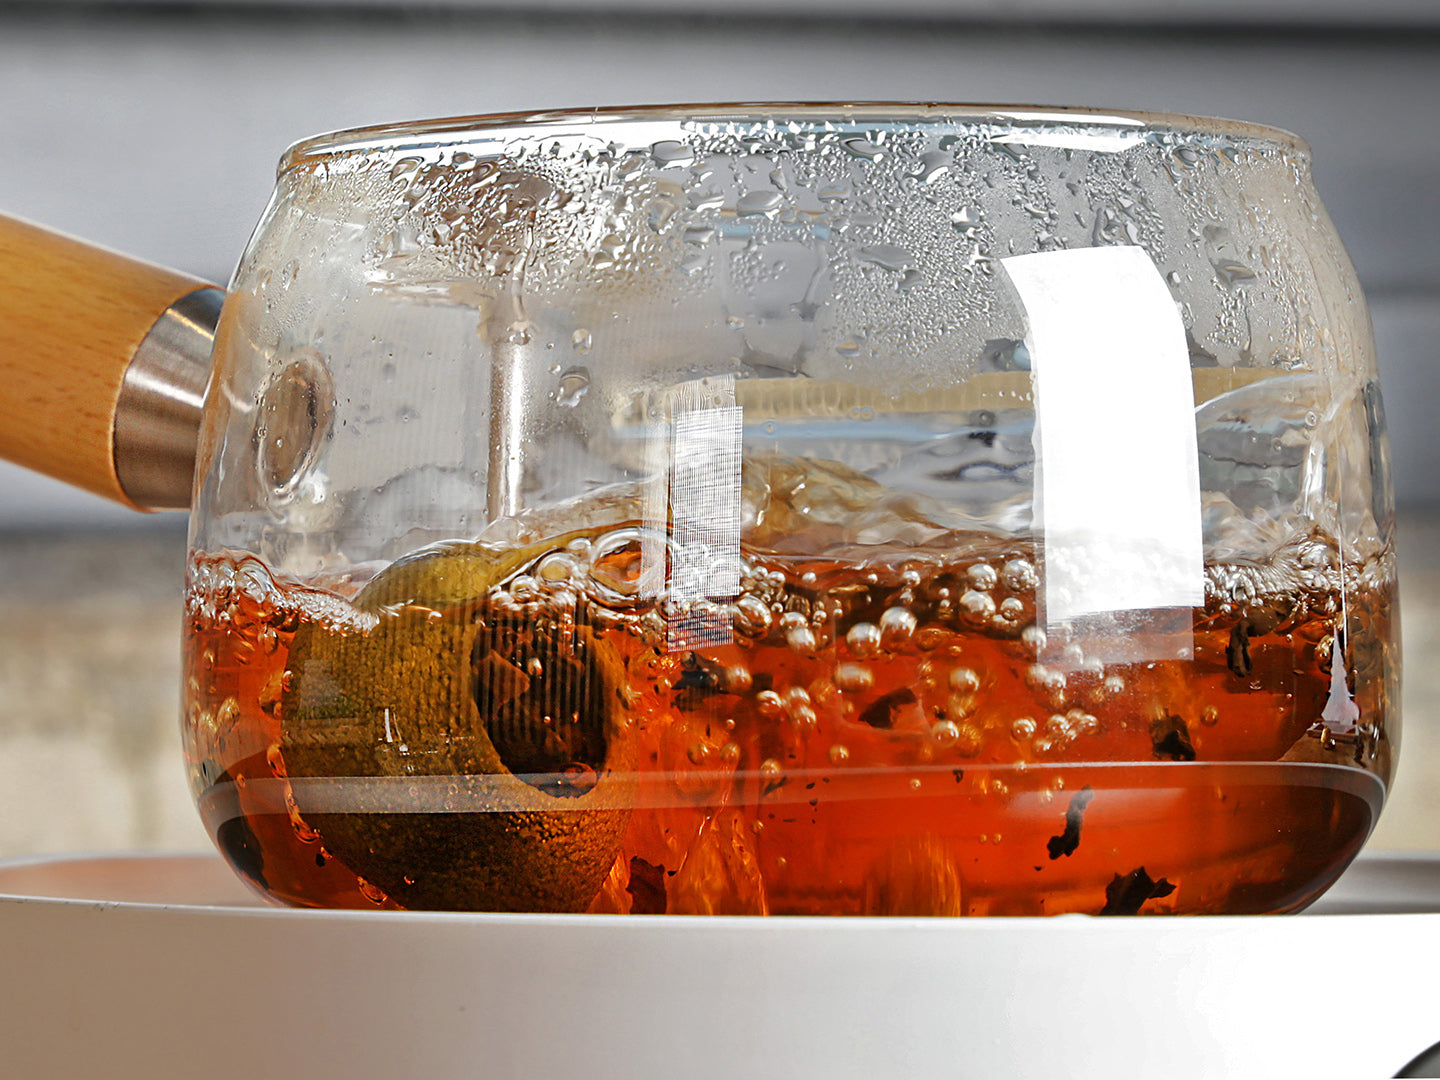 Modern Style Glass Teapot - Simple Brewing Teapot (450ml) – EILONG®